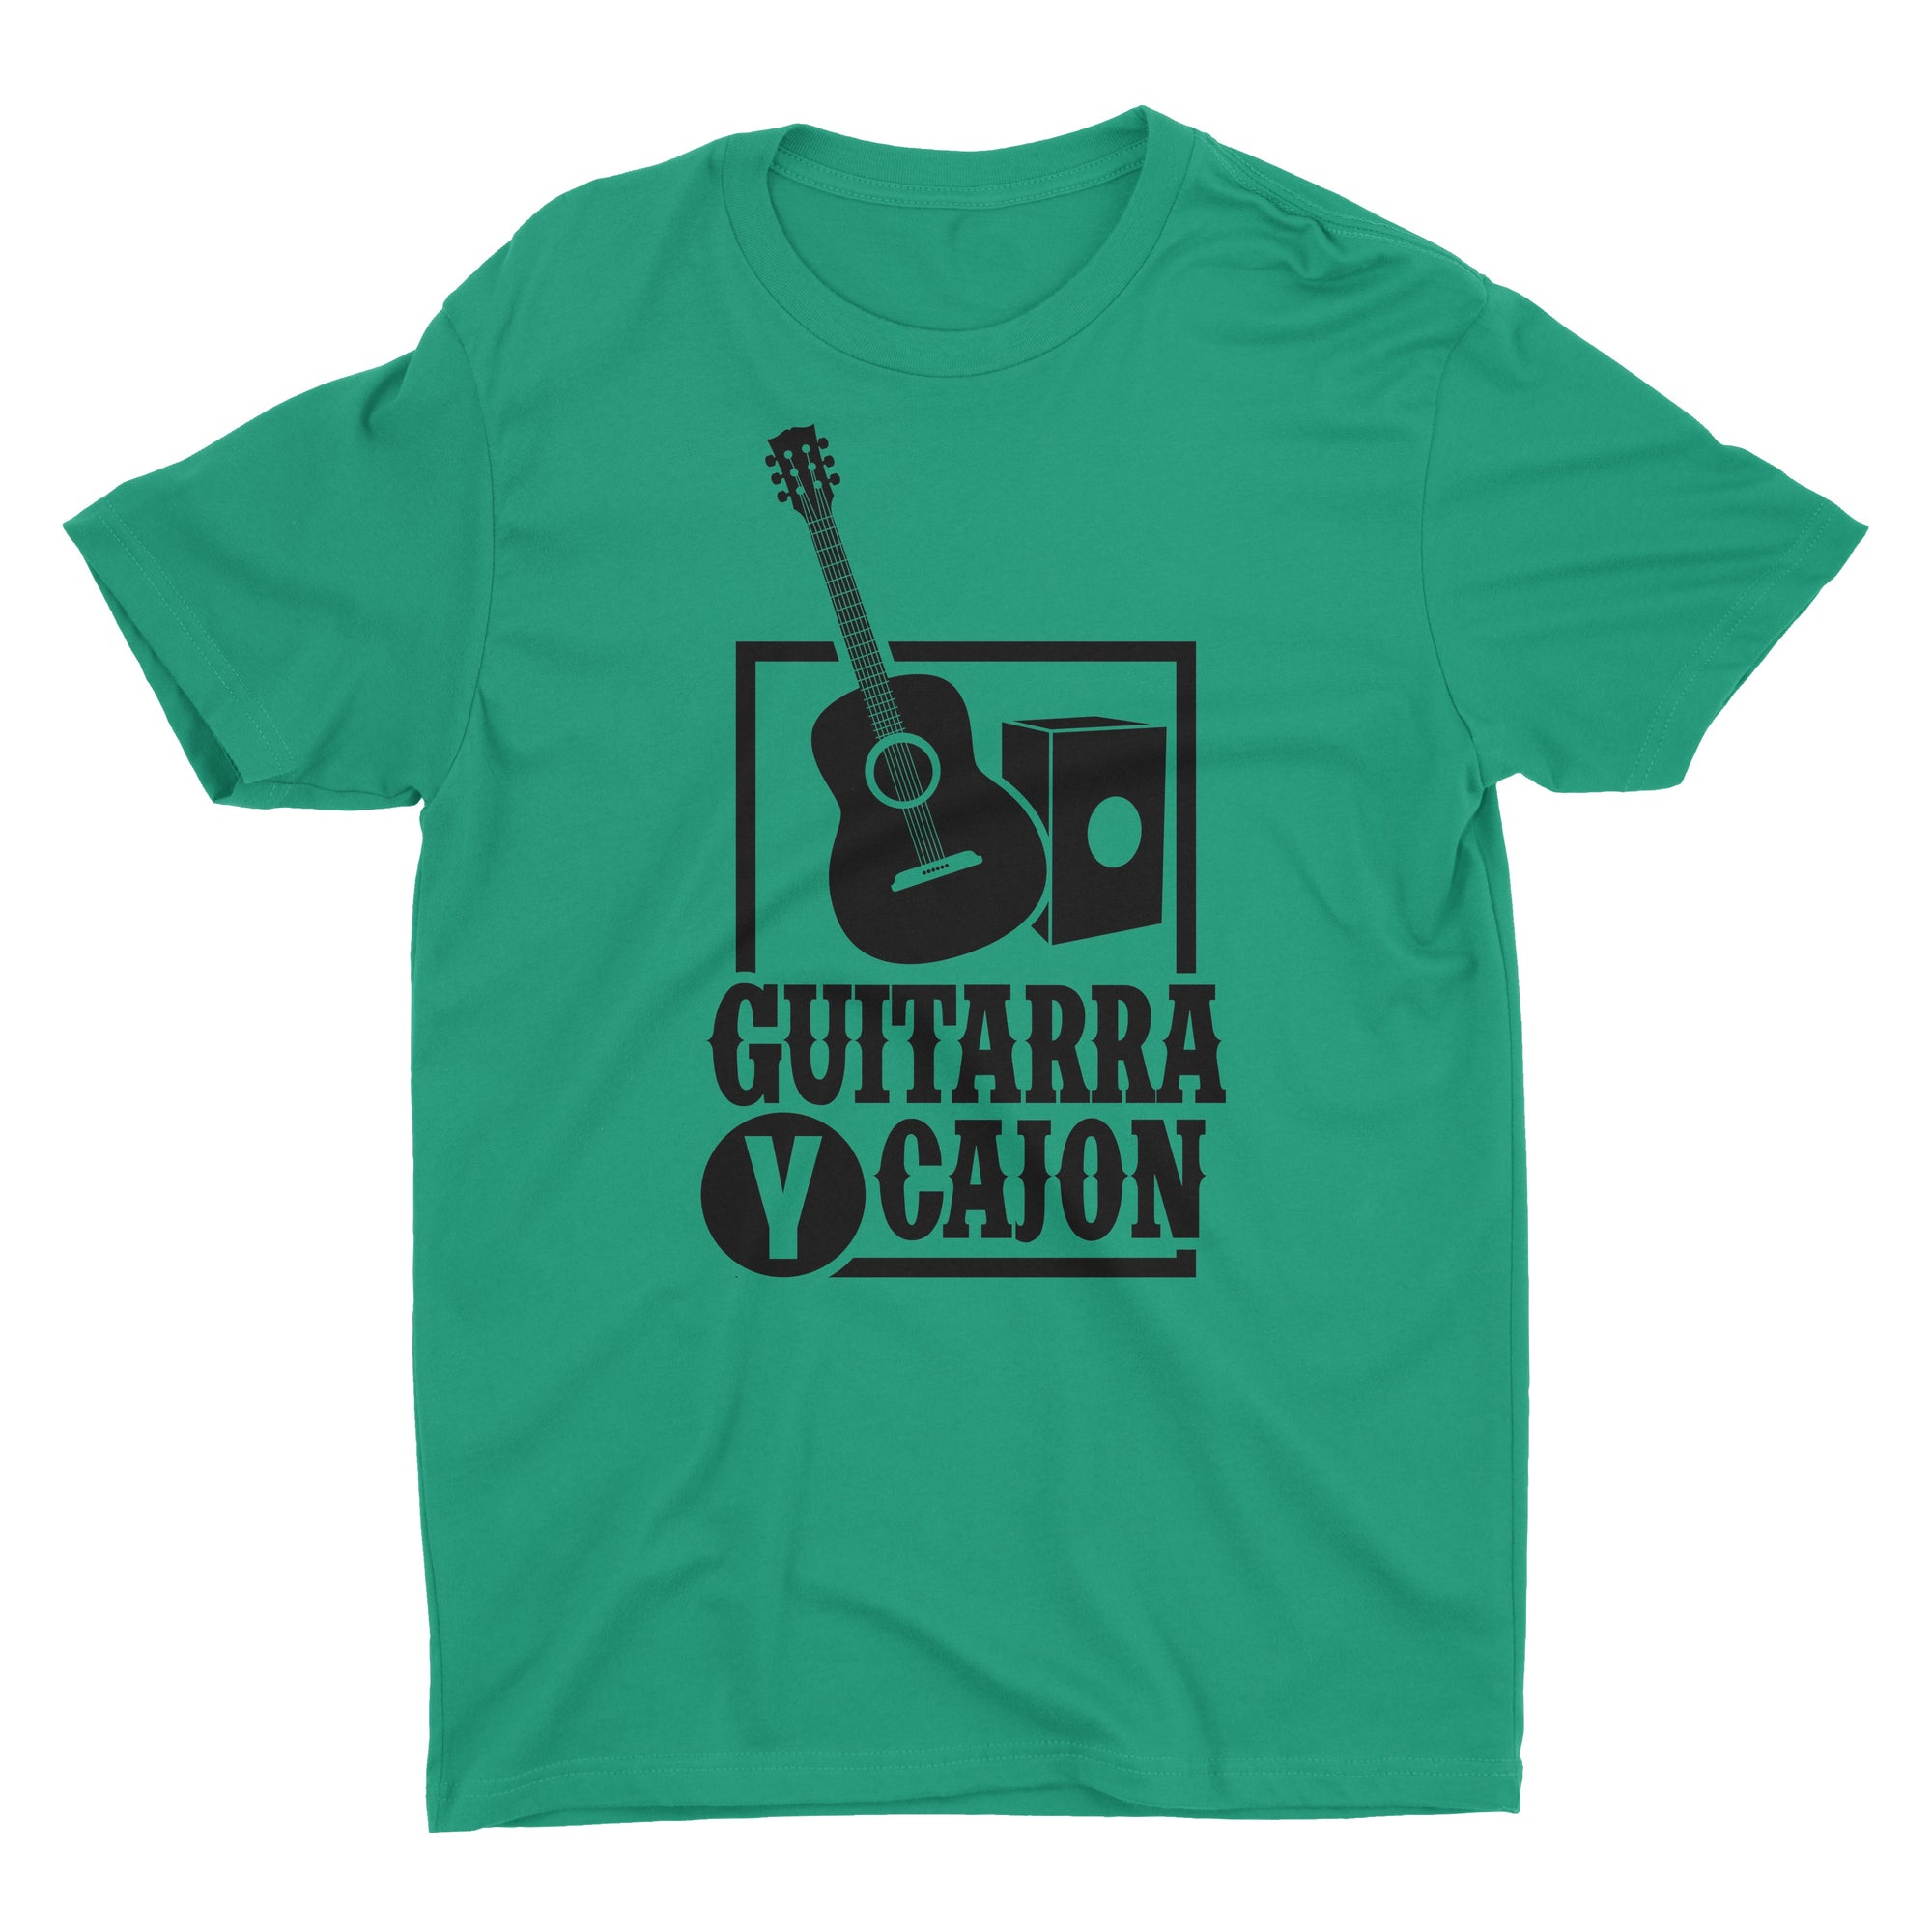 Musica Criolla Guitarra y Cajon T-Shirt for Men - PeruCoUSA